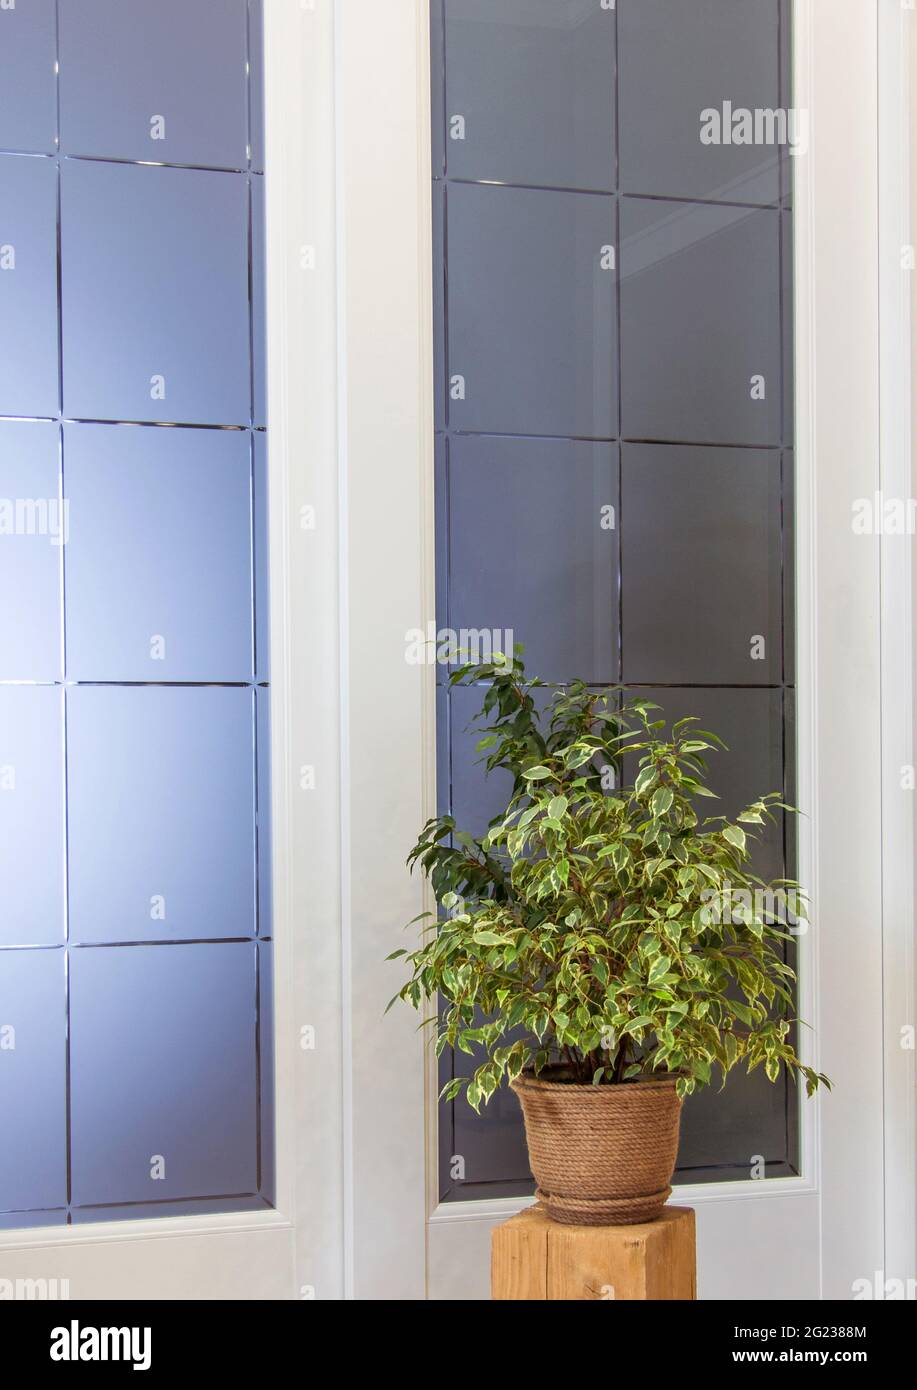 Eine Art von Topfpflanzen in Juteköpfen in einem hellen Raum Copy space Dekoration im Kinfolk-Stil Stockfoto